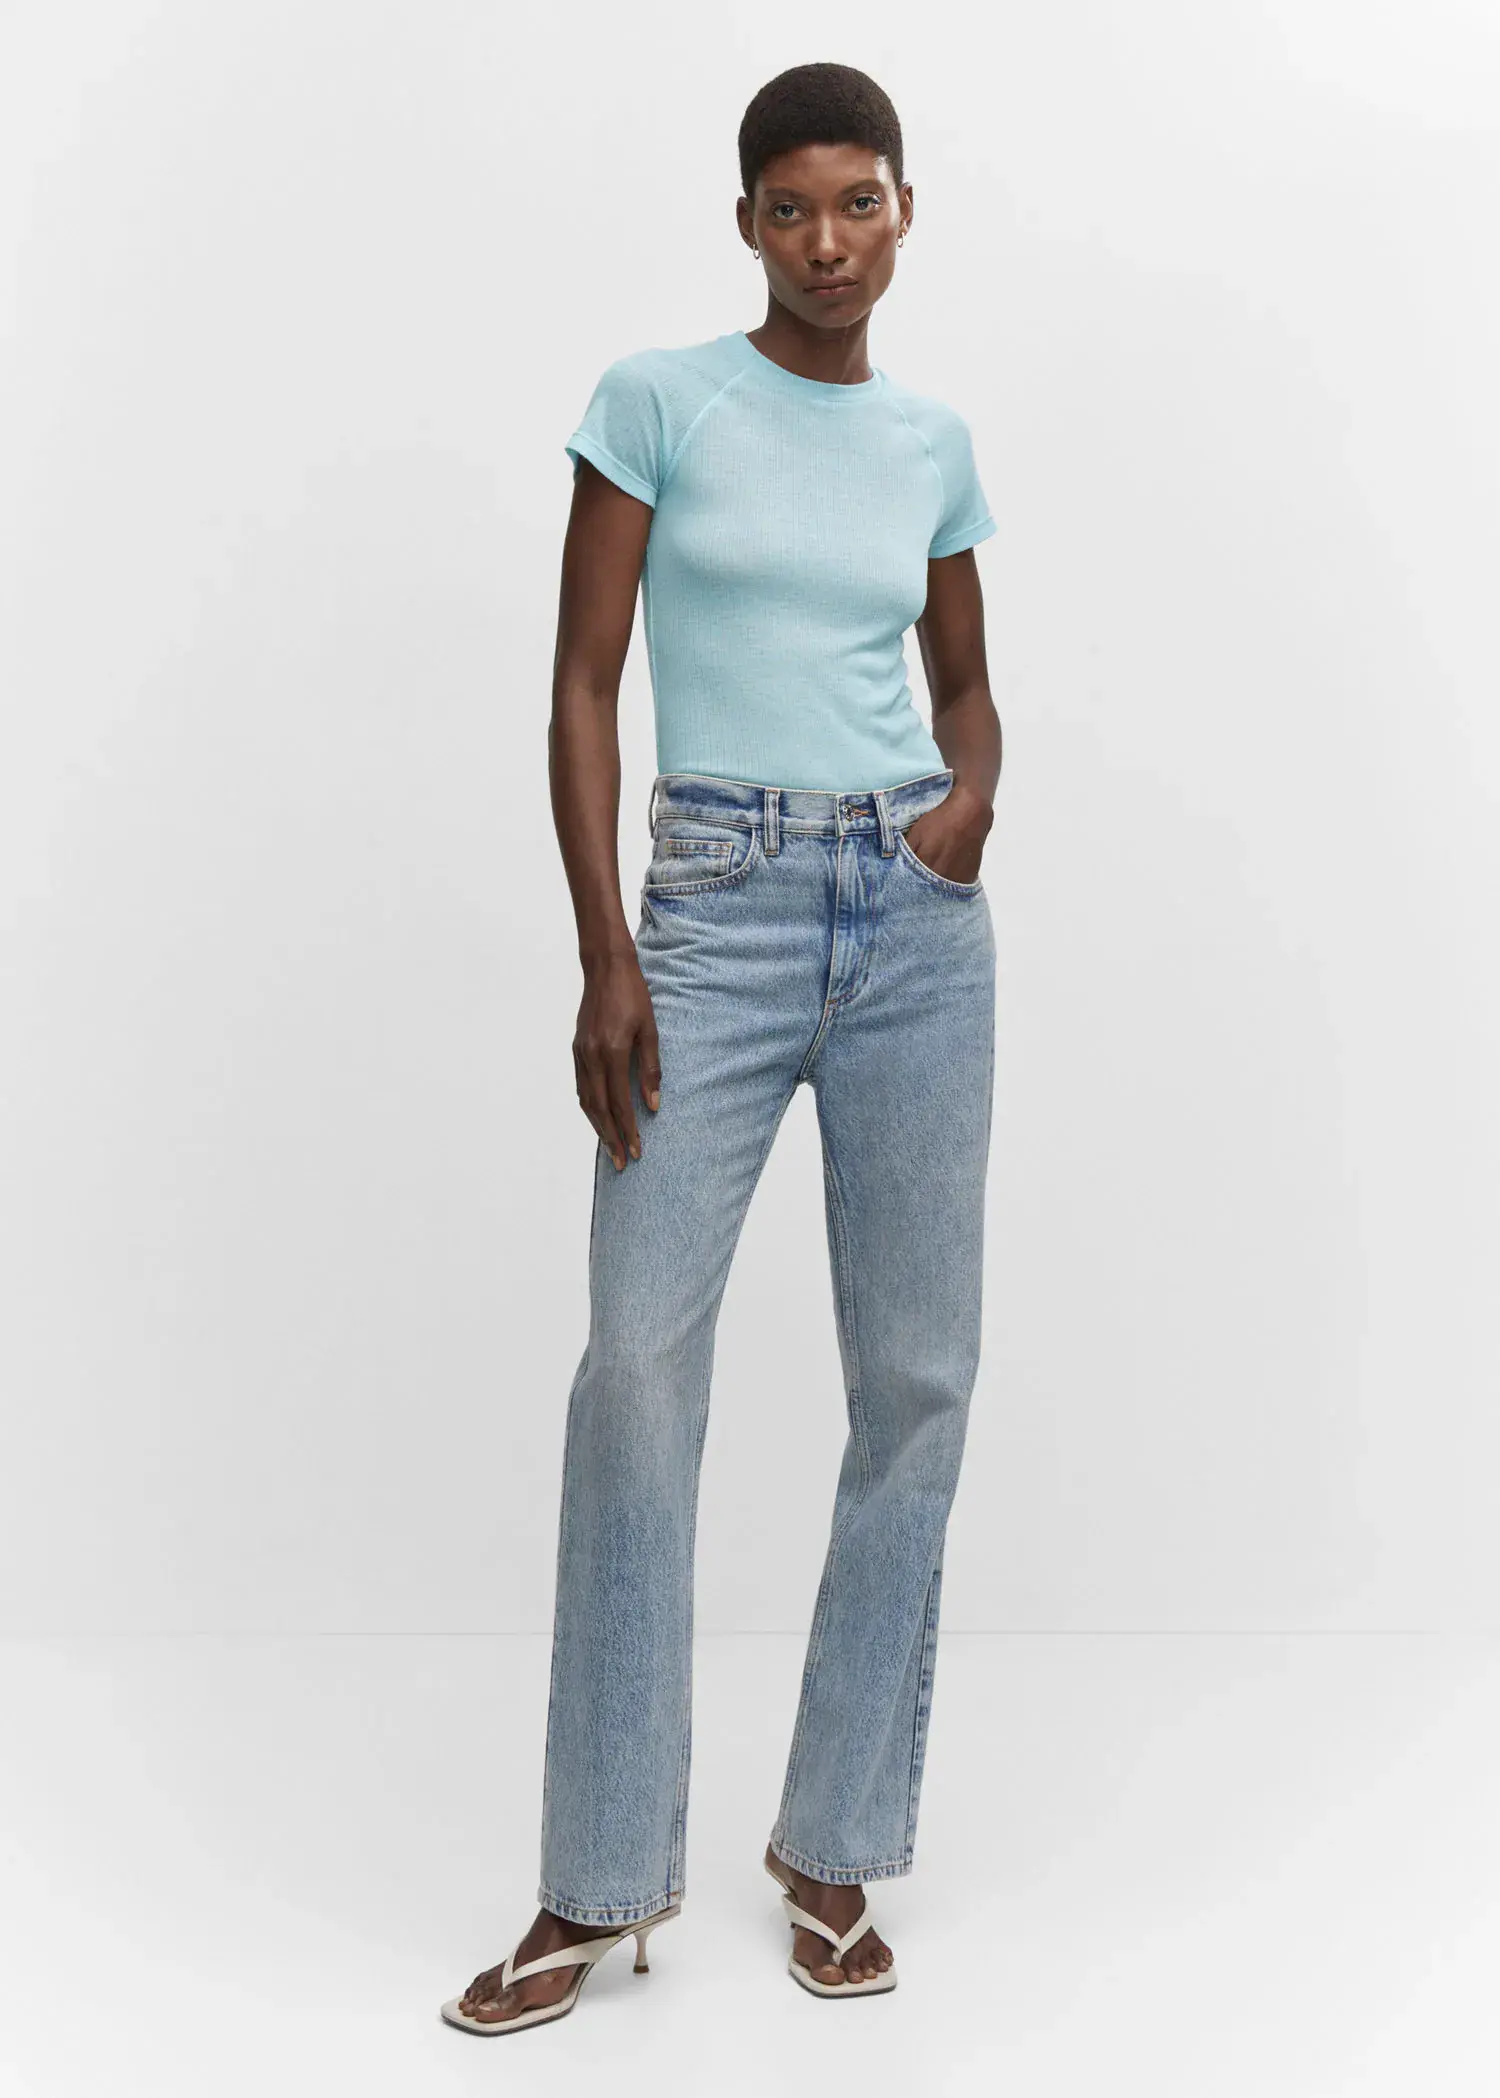 Mango Seam detail T-shirt. a woman wearing a light blue shirt and jeans. 